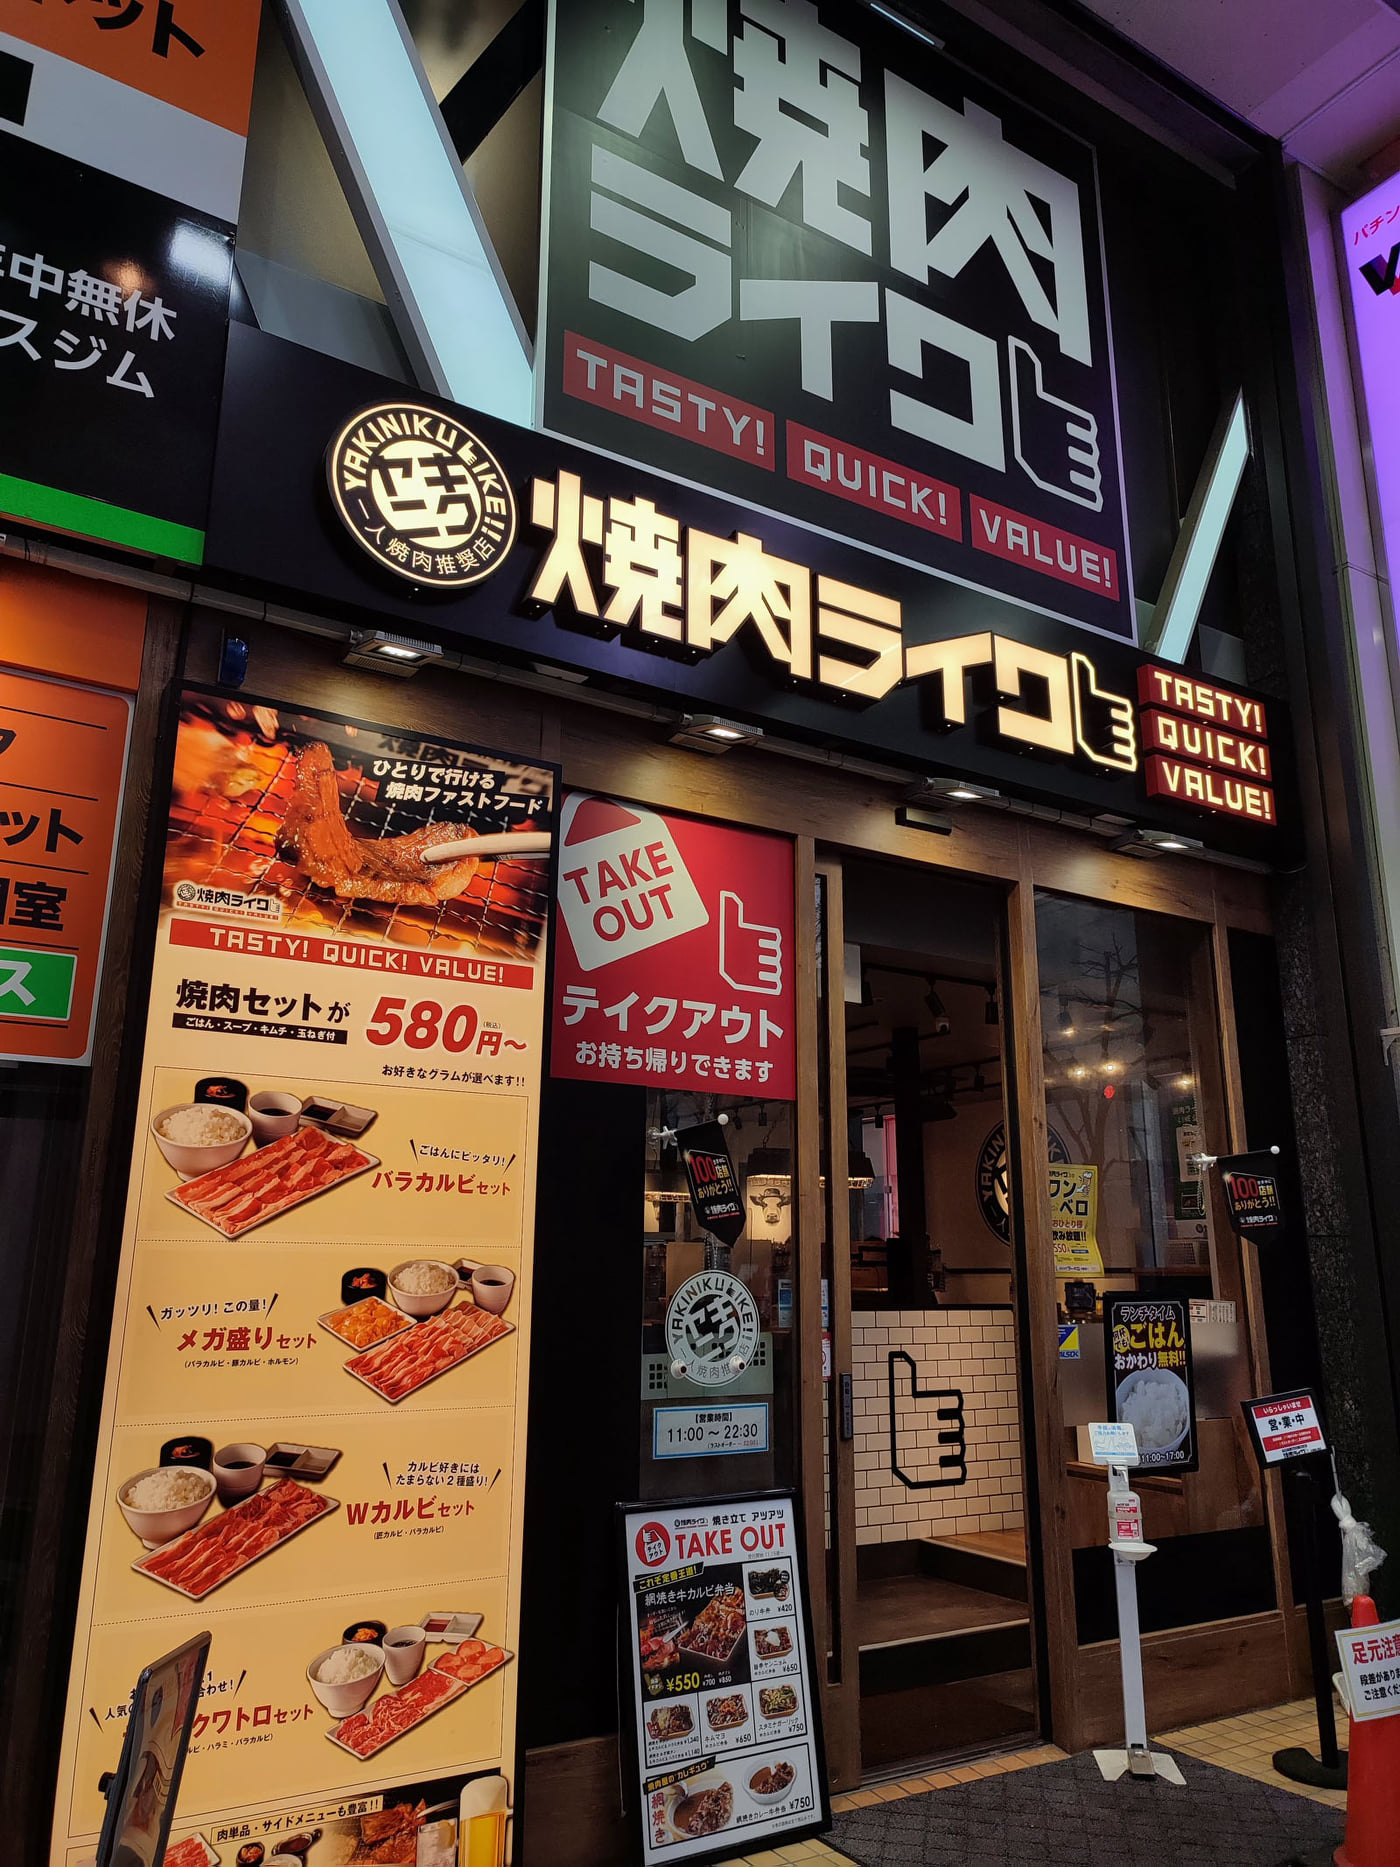 飲食店コンサルティング 食ビジネスコンサルティング フードビジネスコンサルティング サービス業コンサルティング 札幌 北海道